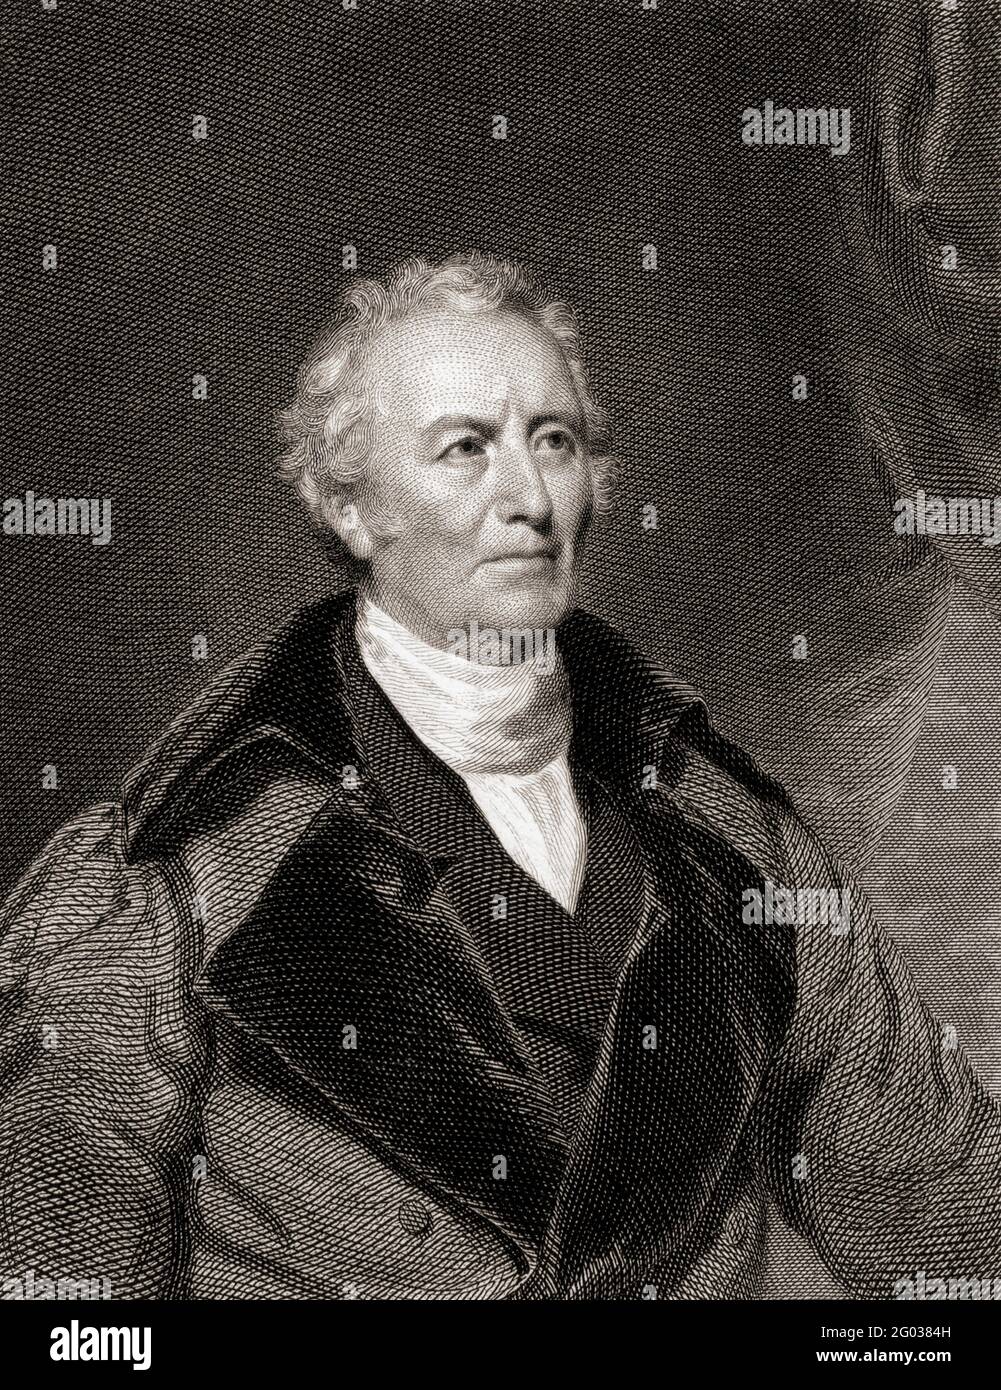 John Trumbull, 1756 - 1843. Amerikanischer Künstler während des amerikanischen Revolutionskrieges. Vier seiner Gemälde hängen in der Rotunde der Hauptstadt der Vereinigten Staaten. Nach einem Werk von Samuel Lovett Waldo. Stockfoto